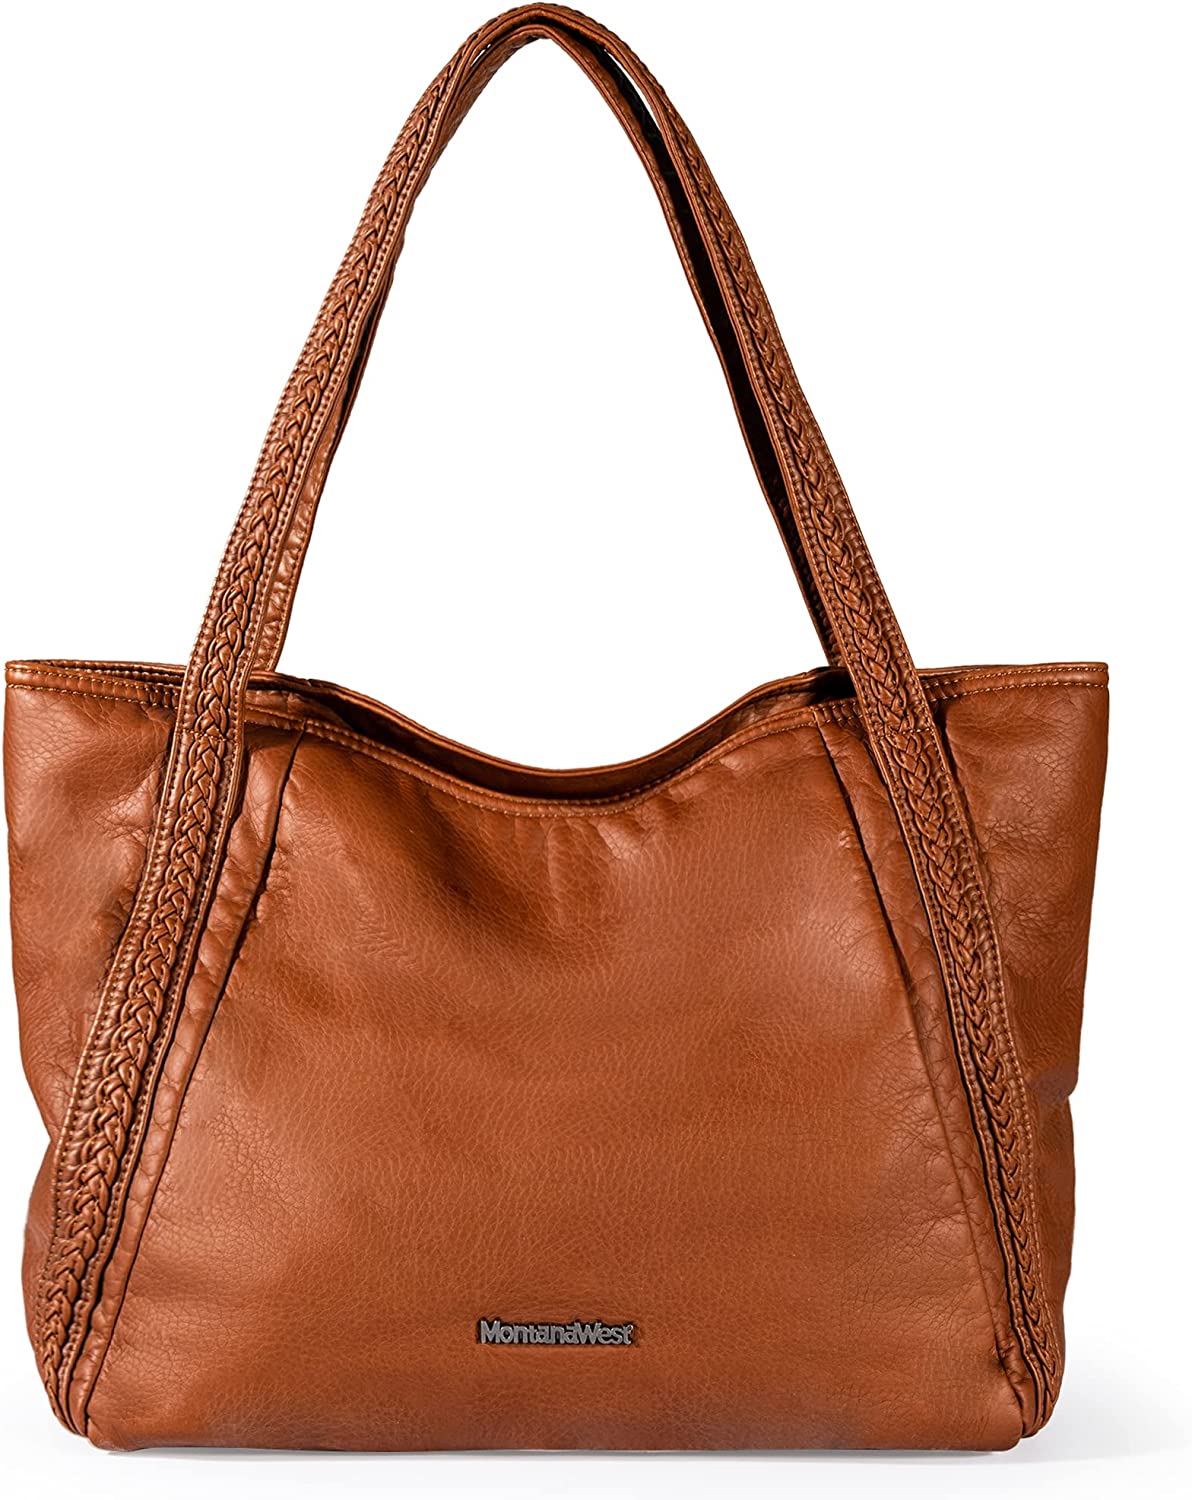 Montana Leather Hobo Handbag